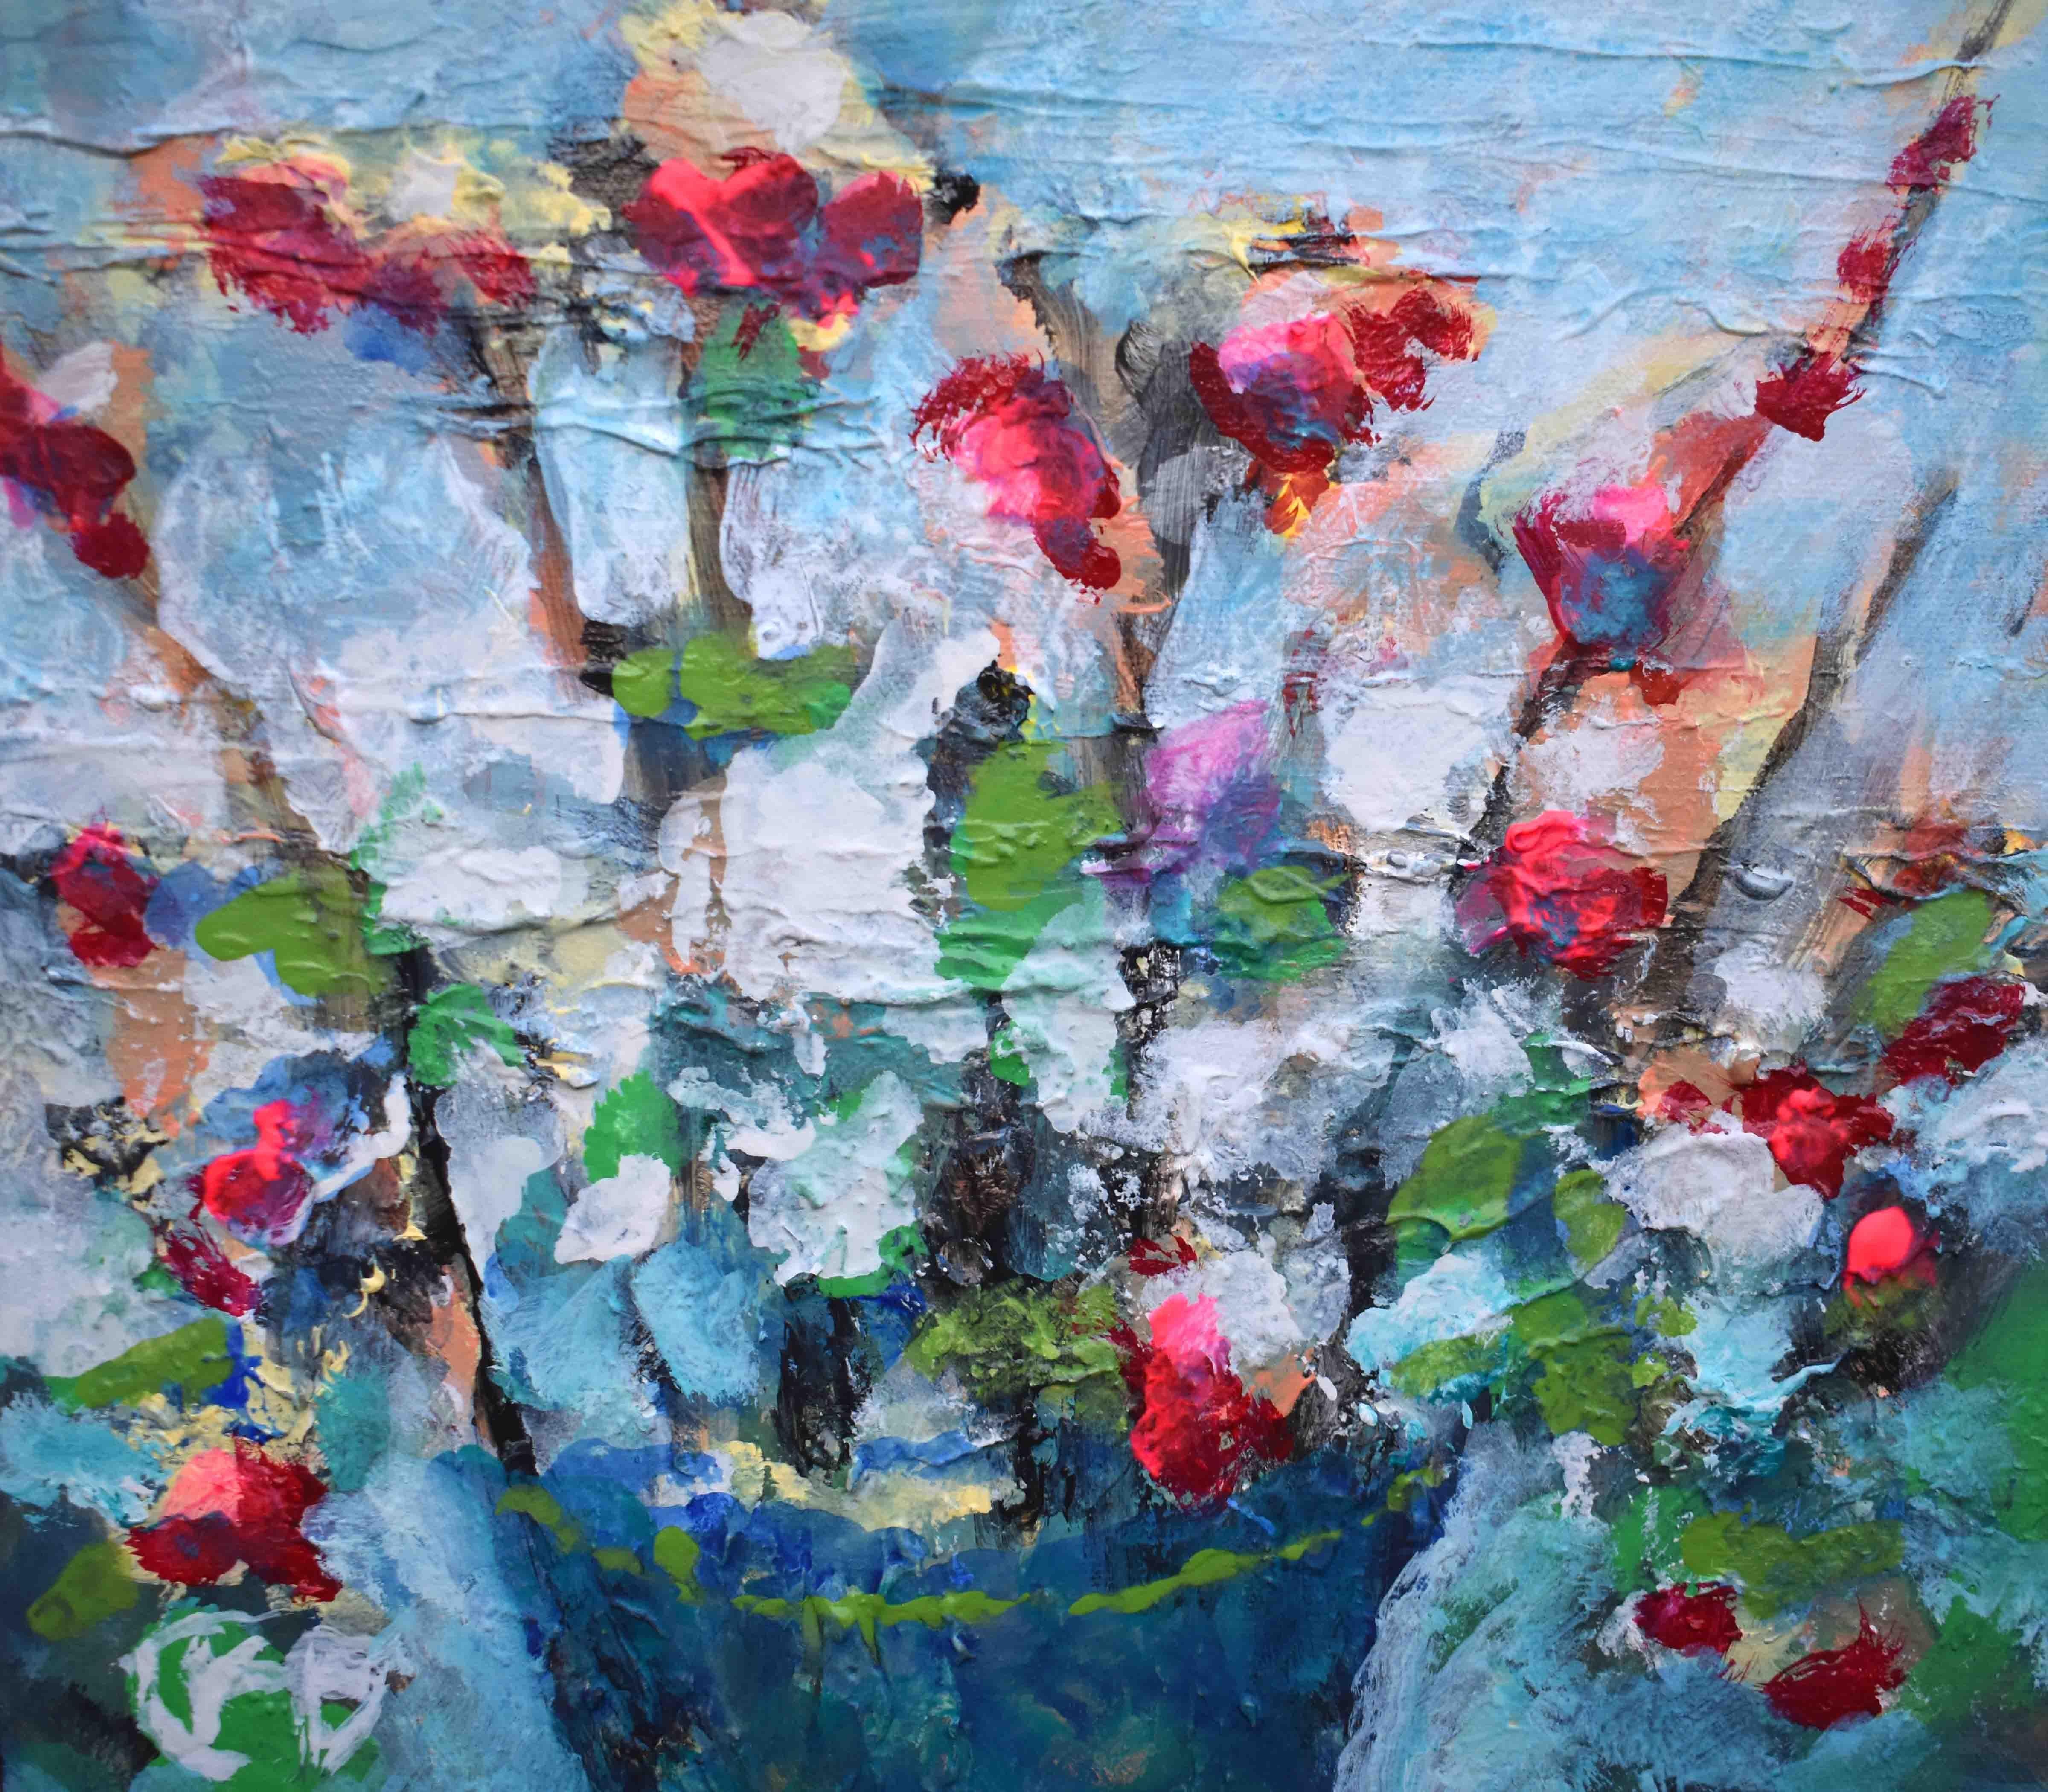 <p>Commentaires de l'artiste<br>L'artiste Kip Decker présente une expression florale légèrement texturée dans un équilibre de tons clairs et sourds. Il peint des fleurs florissantes d'un rouge éclatant qui contraste avec les teintes plus douces. 